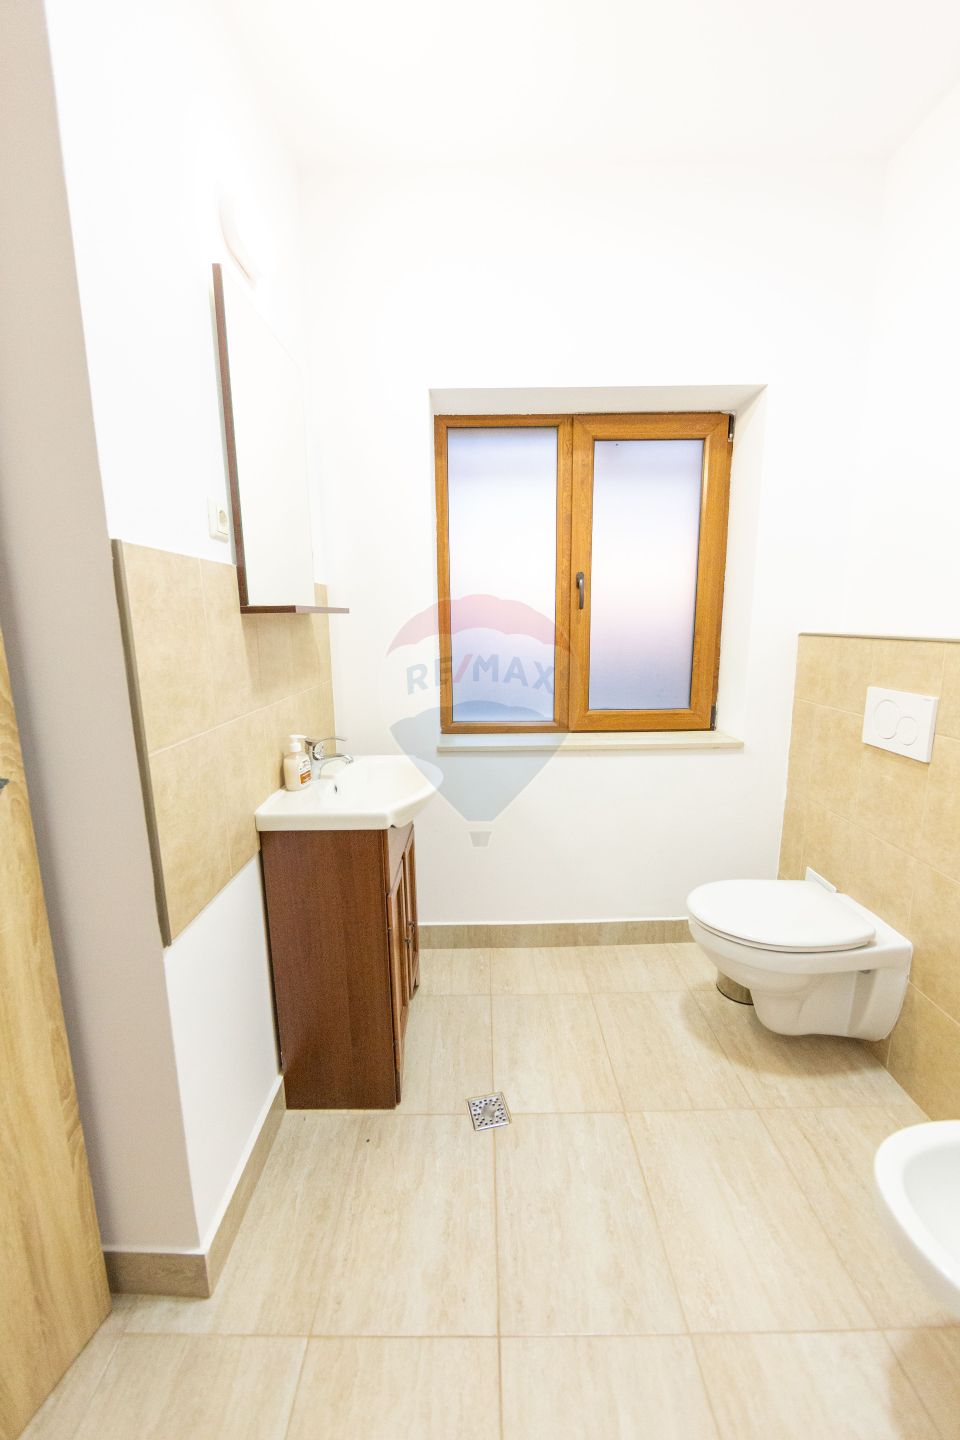 Vila premium de vânzare 5 dormitoare cu baie proprie si teren 1200 mp